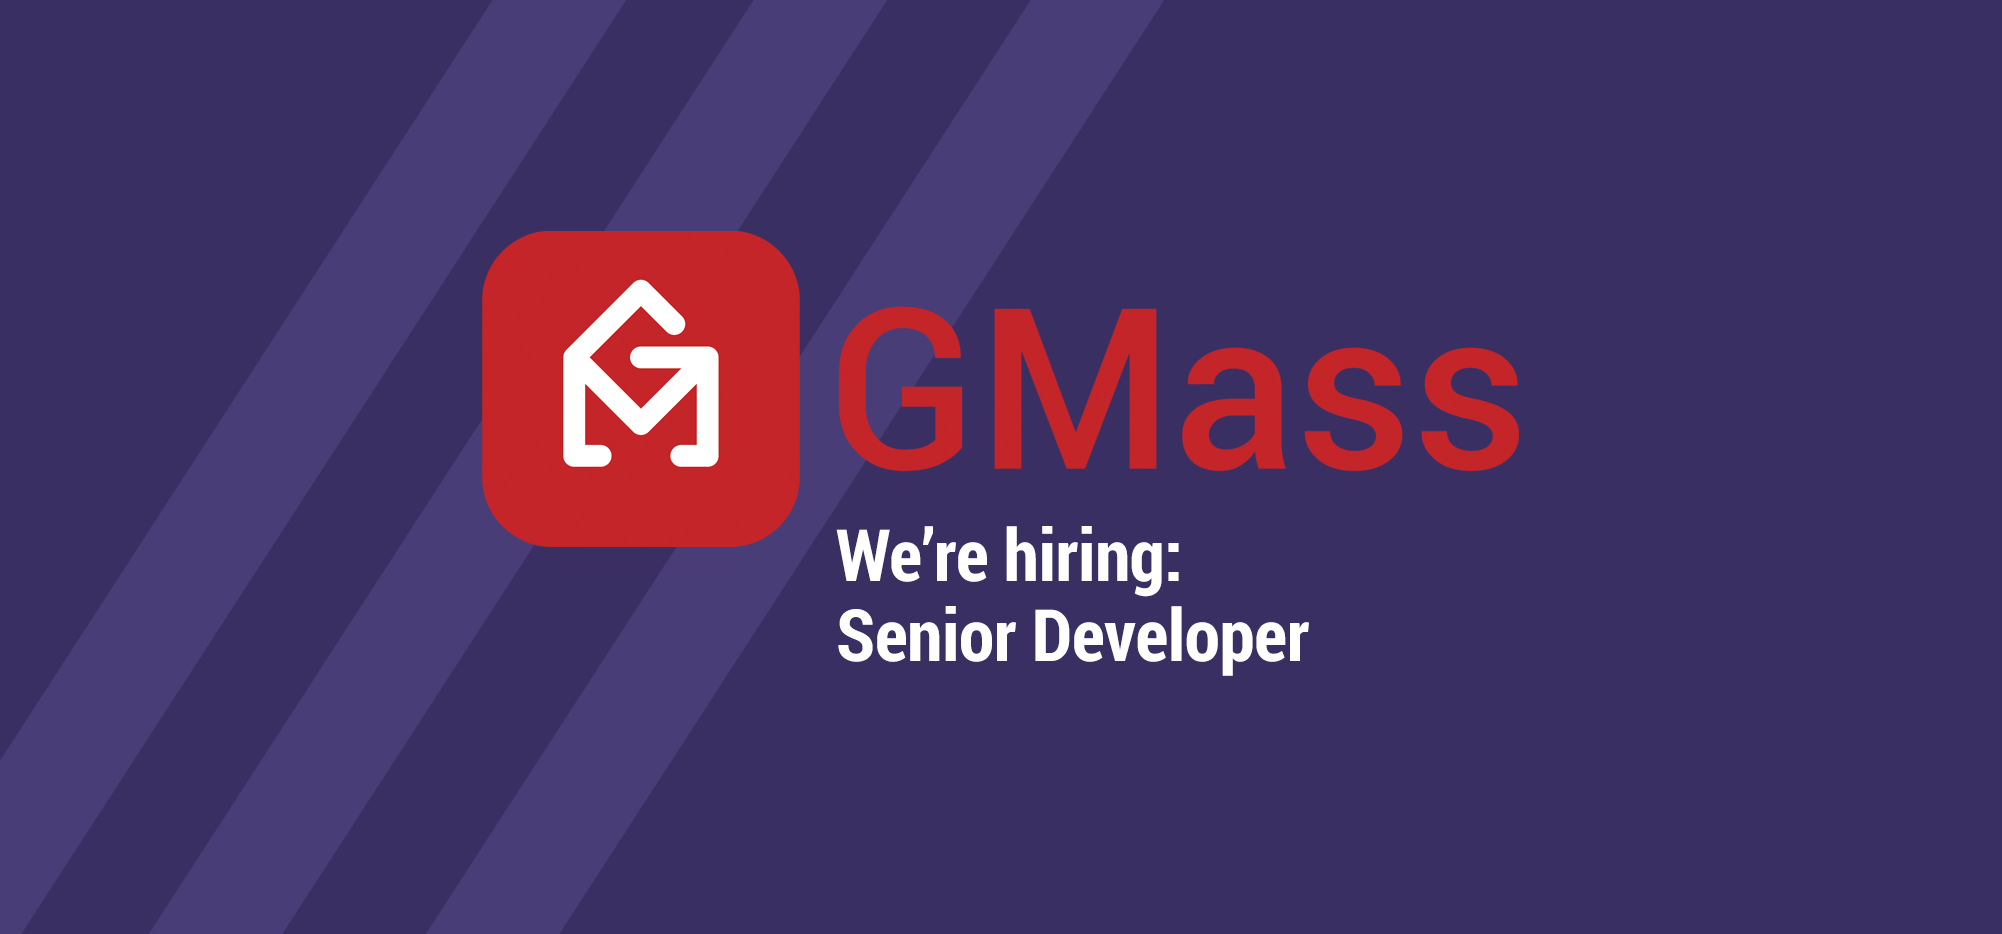 GMass is hiring - Senior Developer